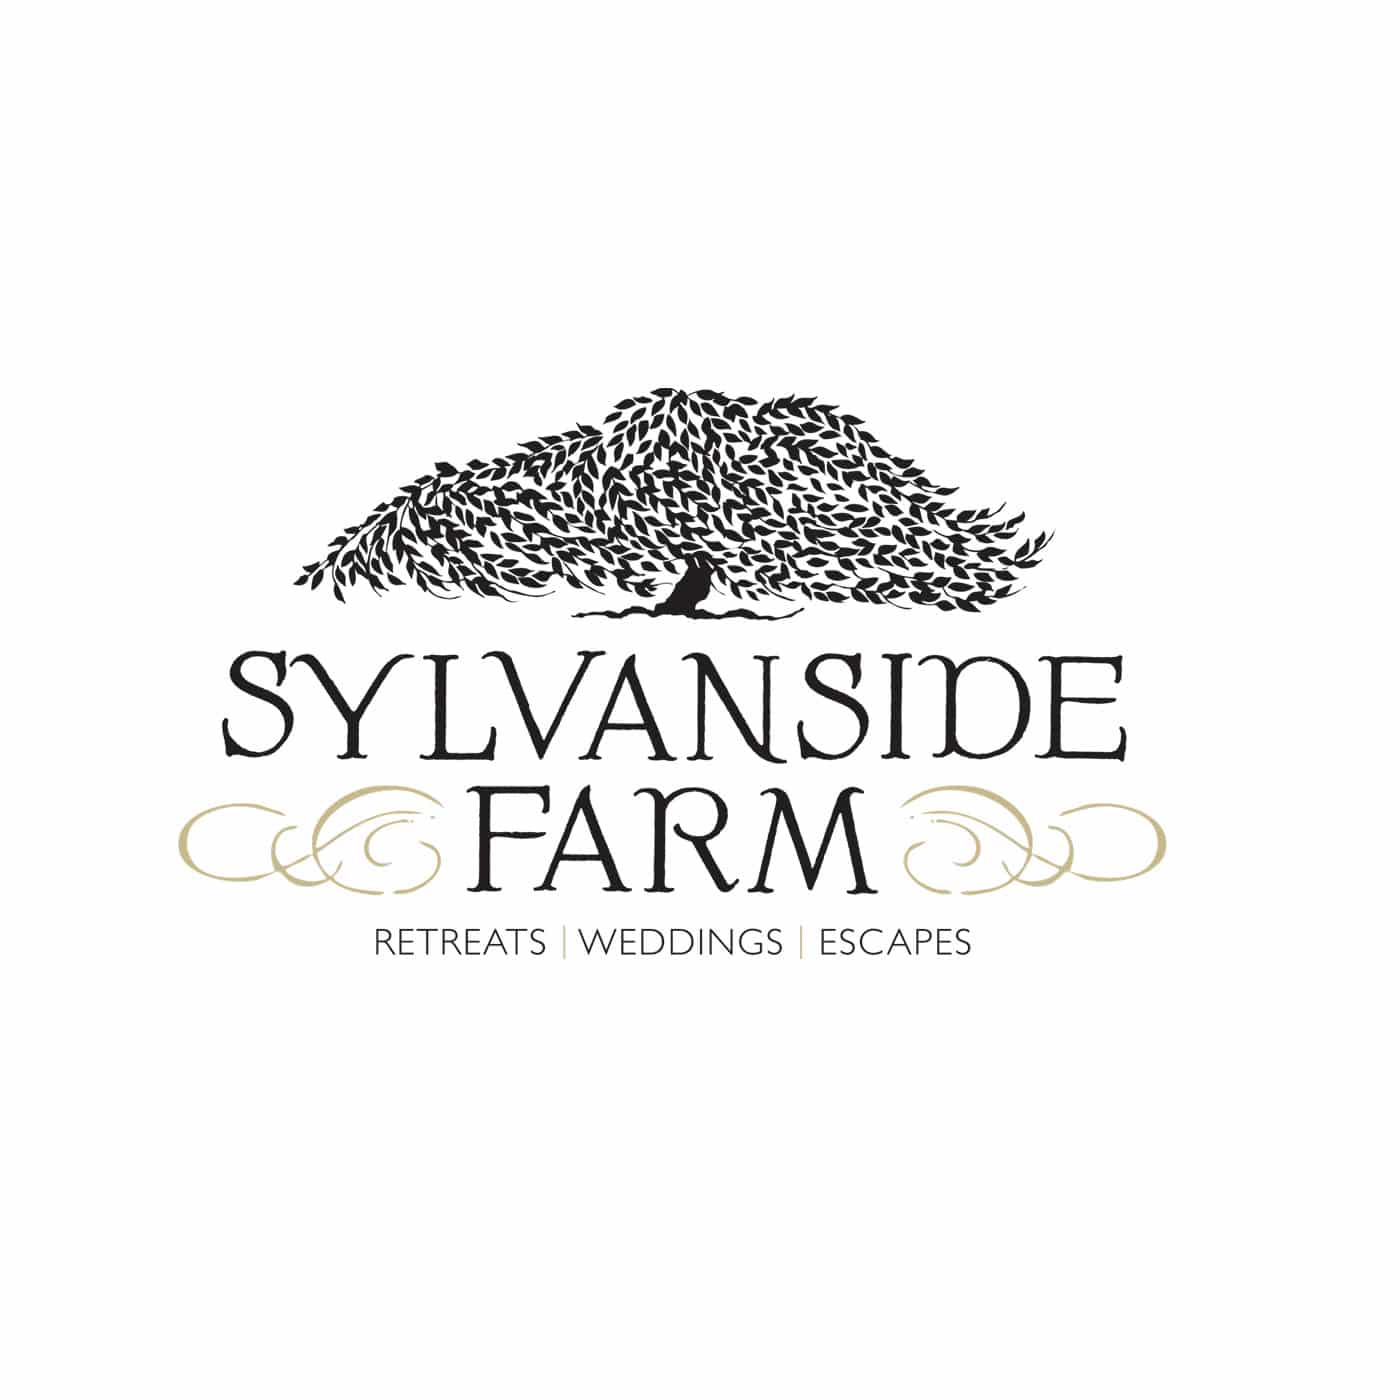 Sylvanside Farm in VA